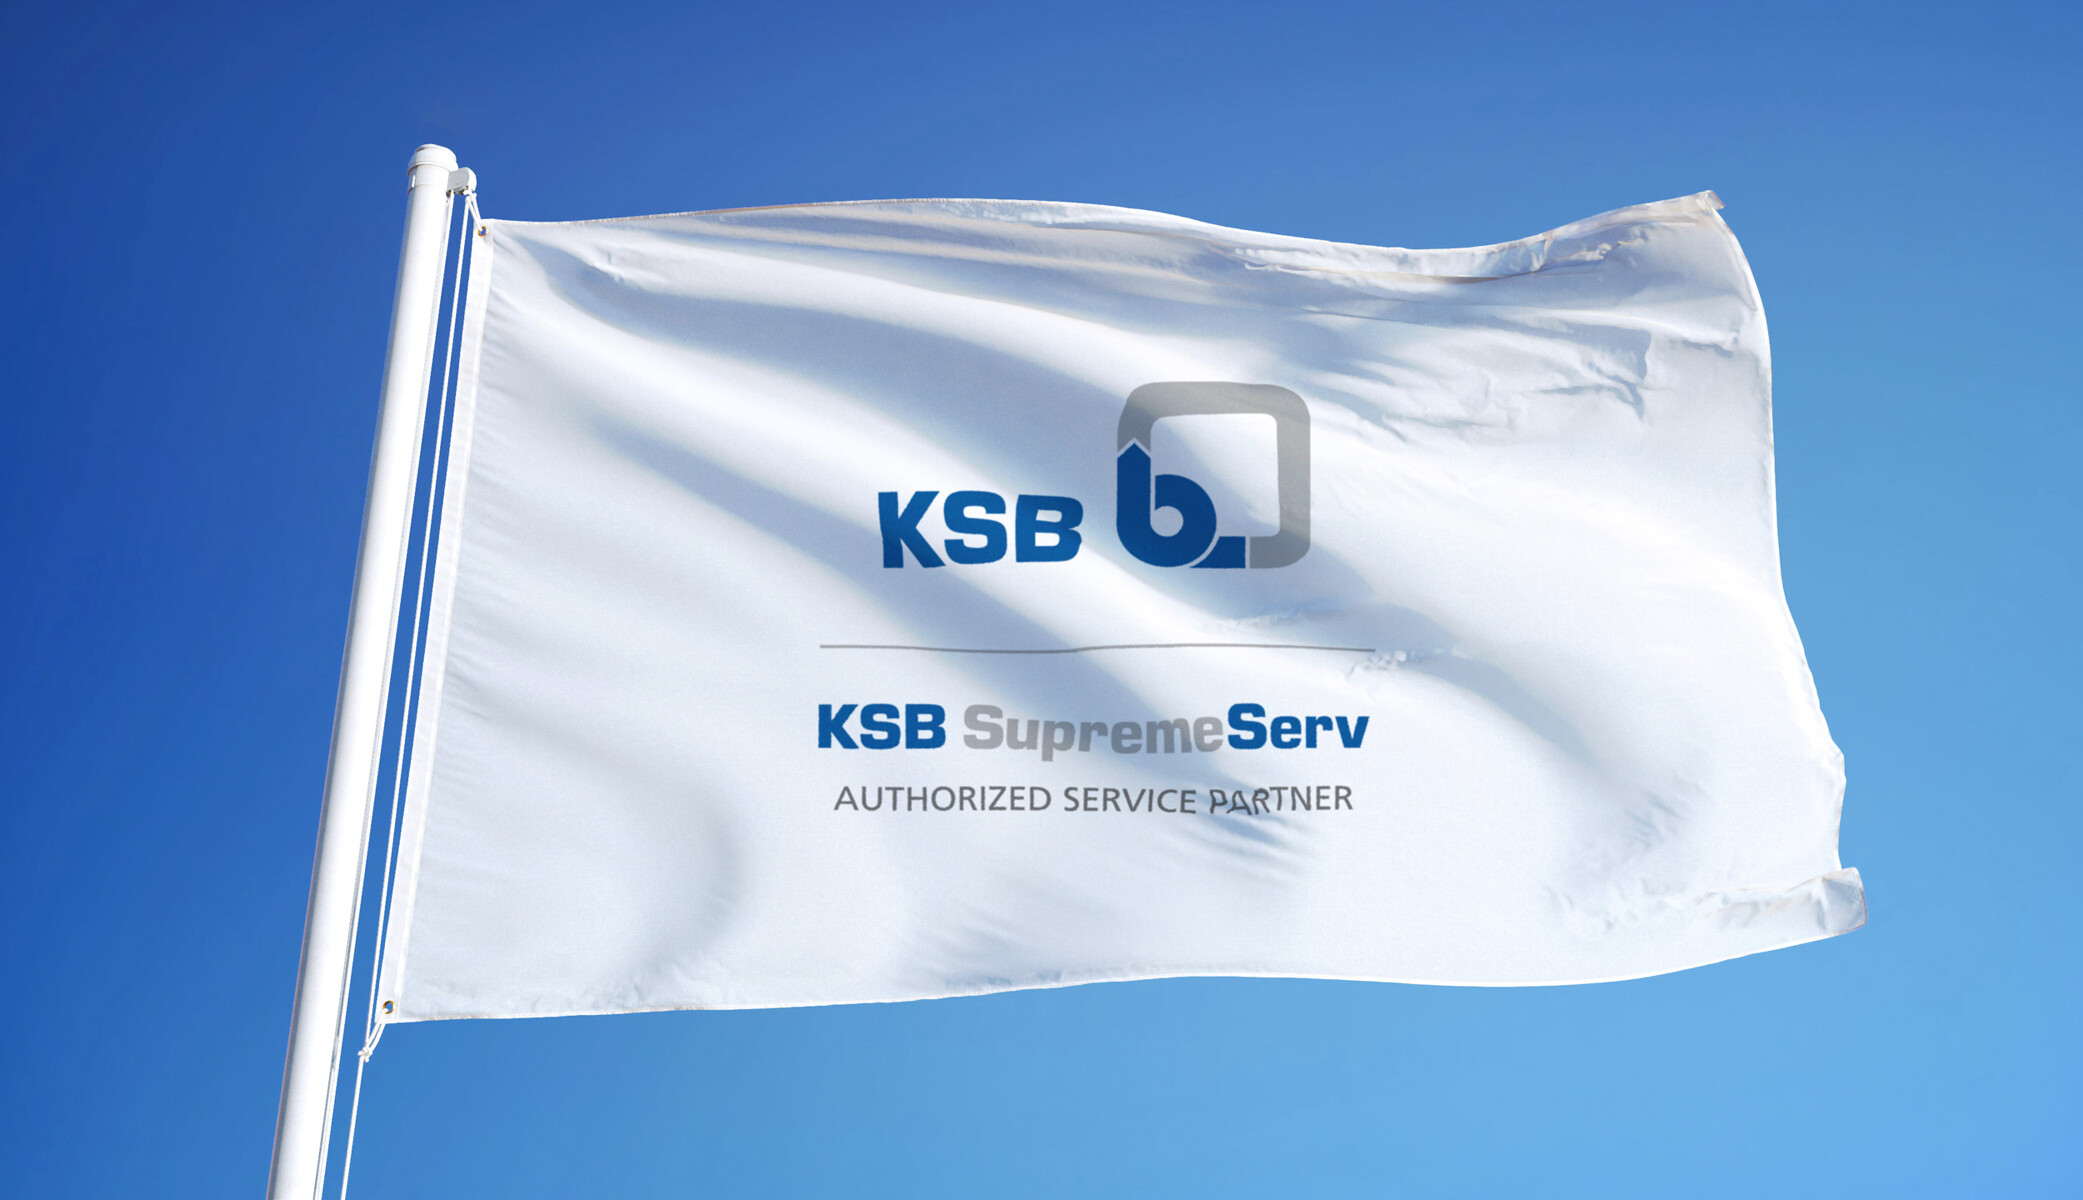 Drapeau avec branding des partenaires de service agréés KSB